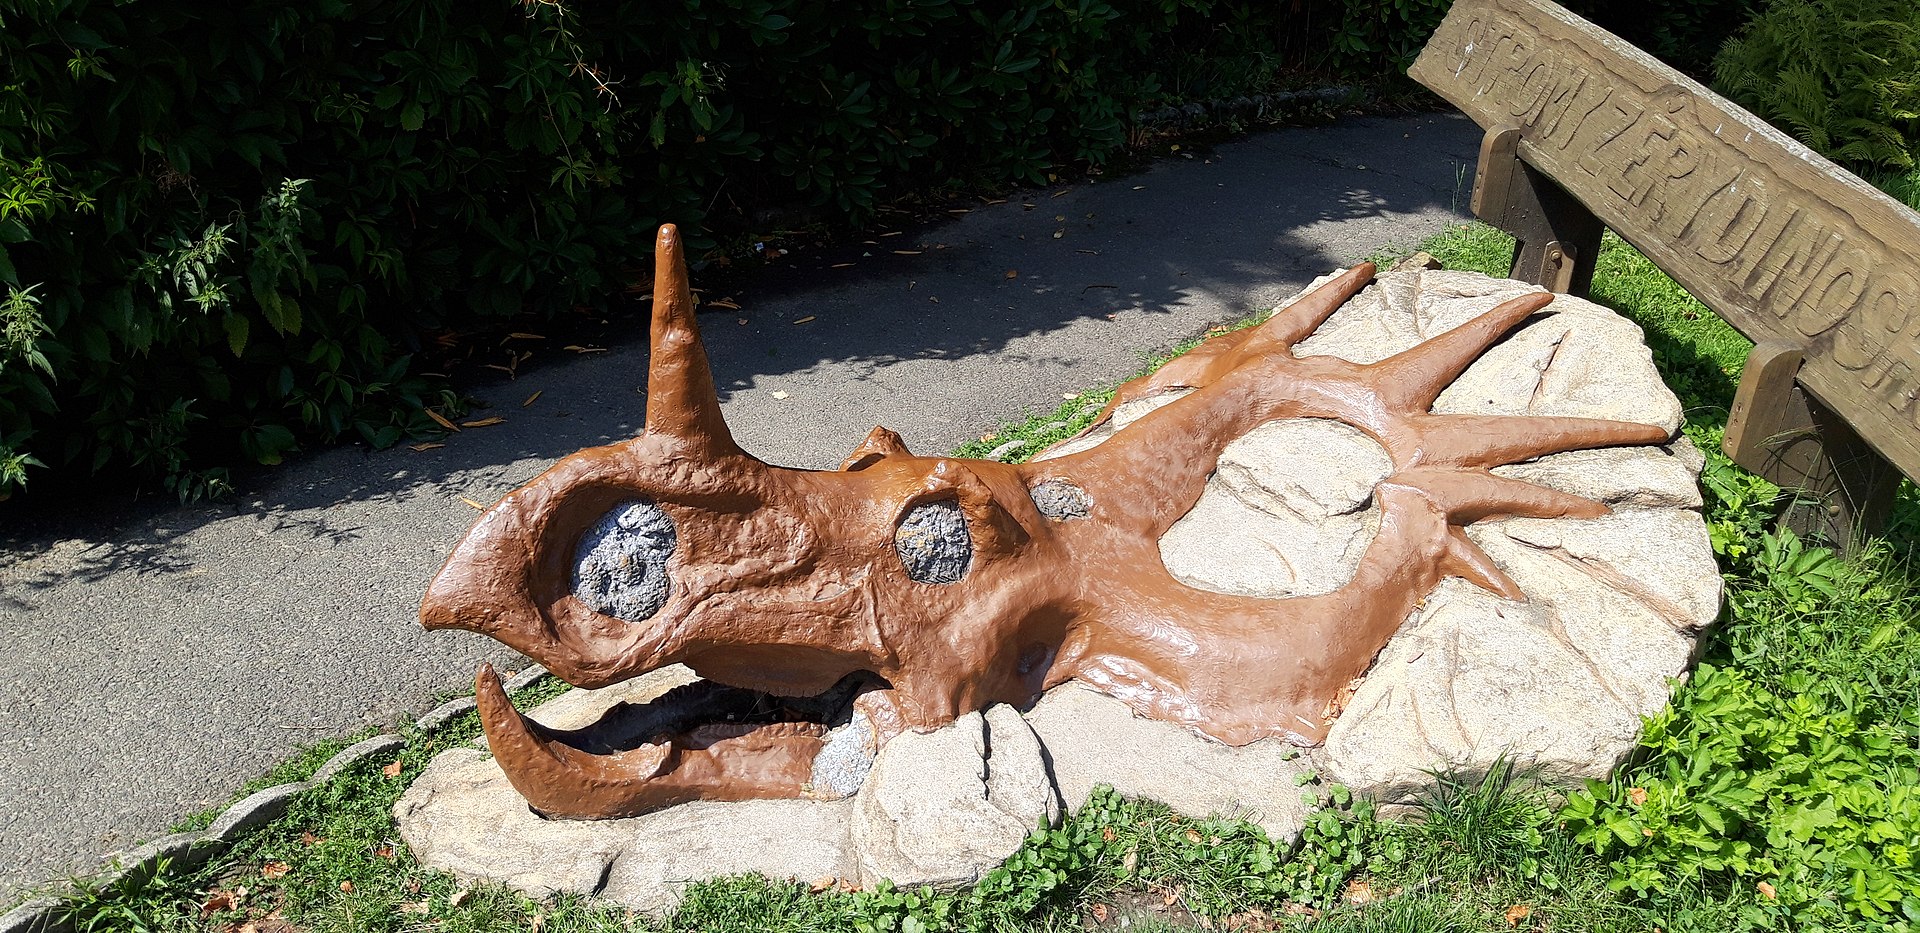 Model lebky ceratopsida styrakosaura mohou v plenéru obdivovat i čeští návštěvníci, a to v areálu Zoologické zahrady ve Zlíně (expozice Stromy z éry dinosaurů). Tento snímek byl pořízen autorem článku letošního 14. srpna. Kredit: Vlastní snímek; Wiki